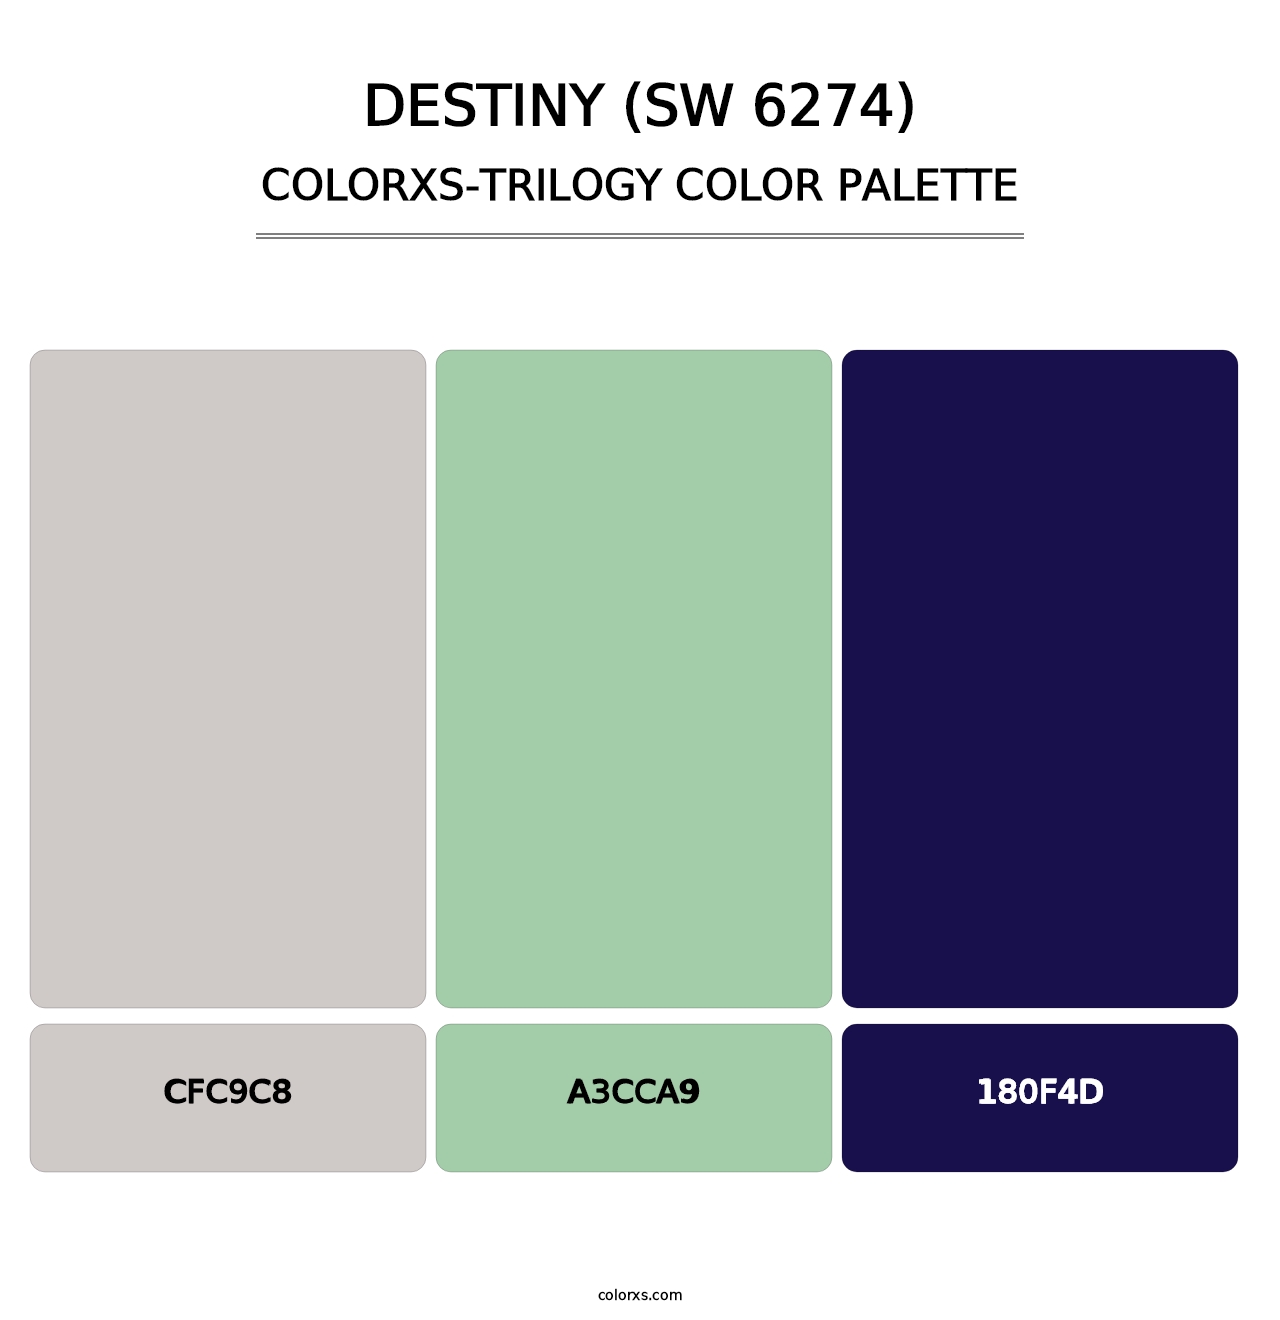 Destiny (SW 6274) - Colorxs Trilogy Palette